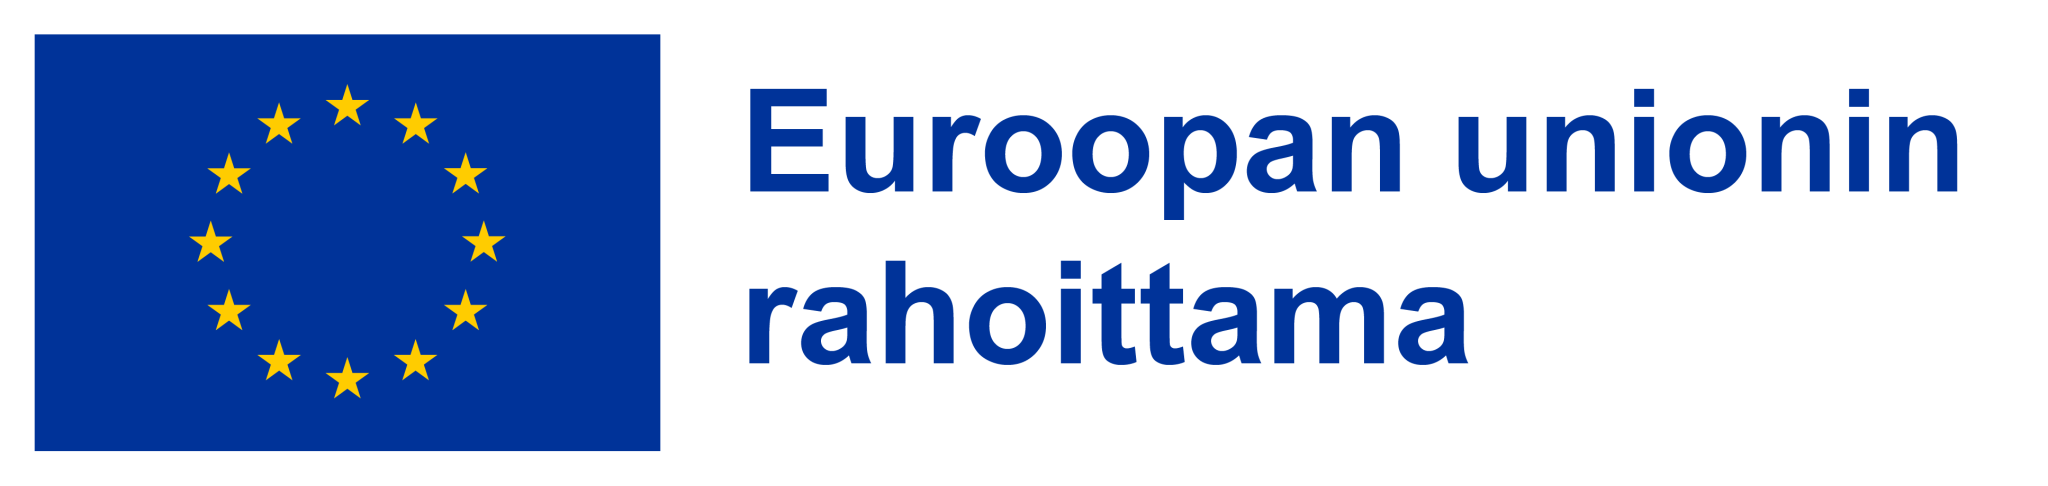 Euroopan unionin rahoittama logo